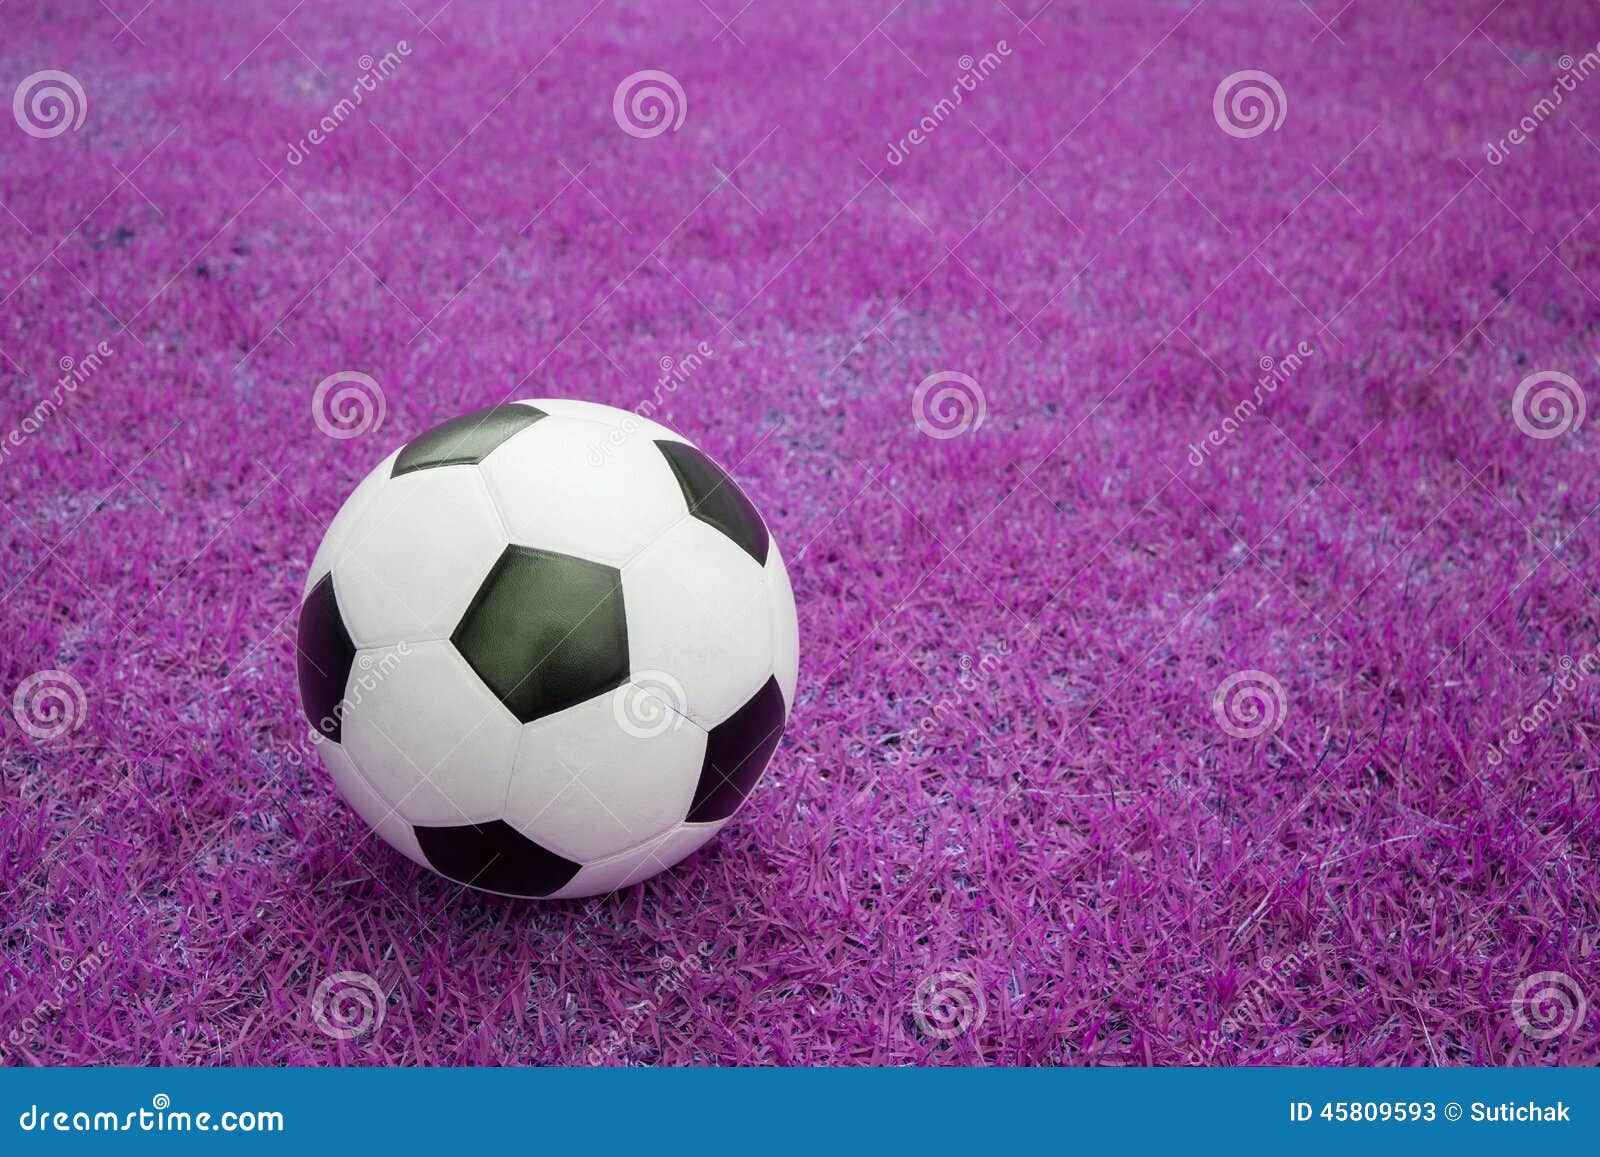 soccer-ball-pink-grass-sport-game-background-45809593.jpg